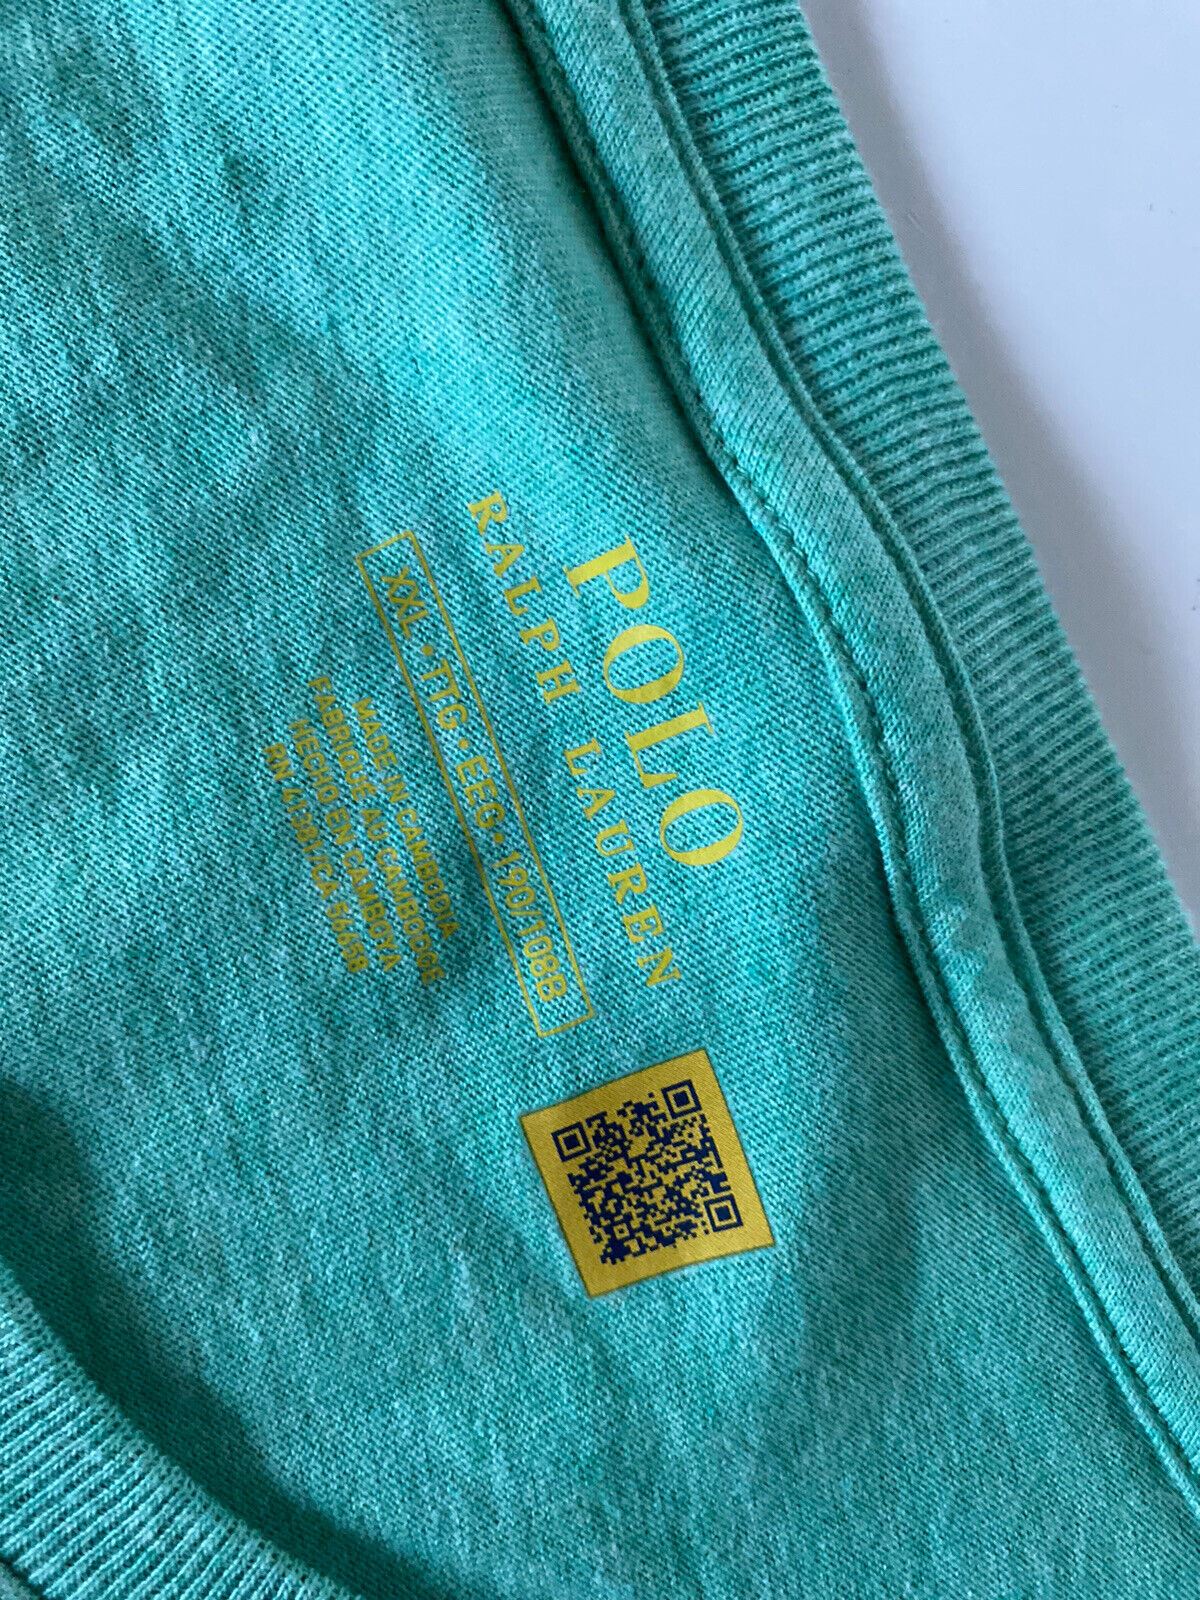 Neu mit Etikett: Polo Ralph Lauren Kurzarm-Baumwoll-T-Shirt, Grün, 2XL 